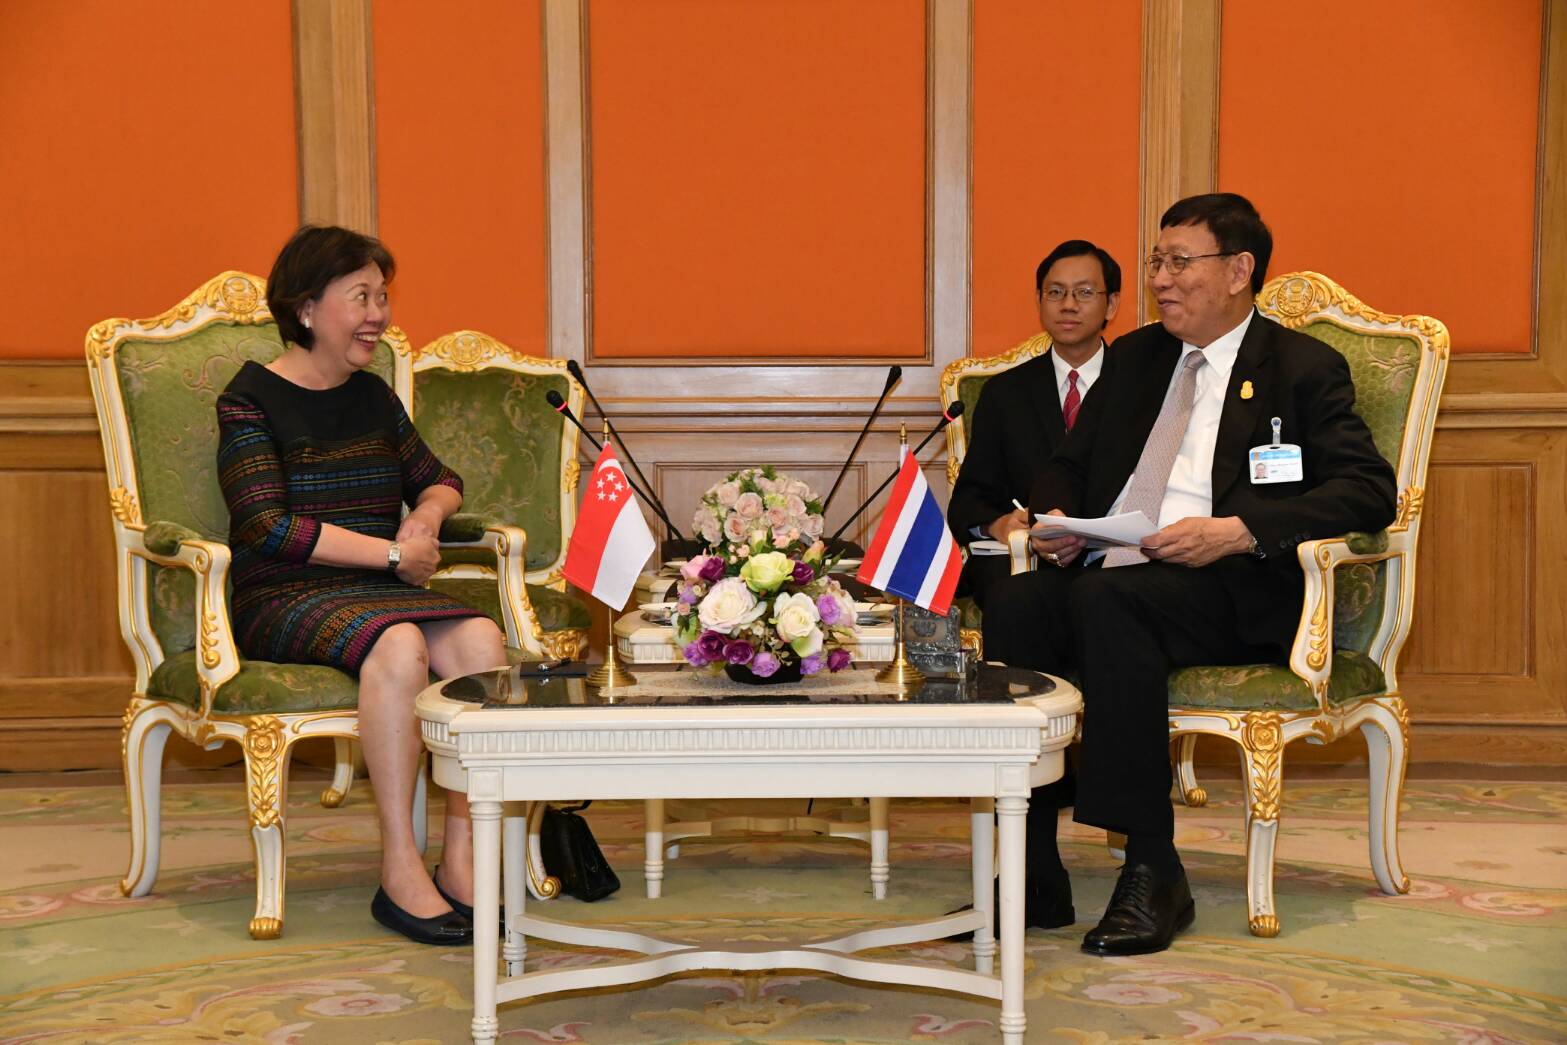 ประธานสภานิติบัญญัติแห่งชาติให้การรับรอง นางฉั่ว ซิ่ว ซาน (H.E. Mrs. Chua Siew San) เอกอัครราชทูตสิงคโปร์ประจำประเทศไทย